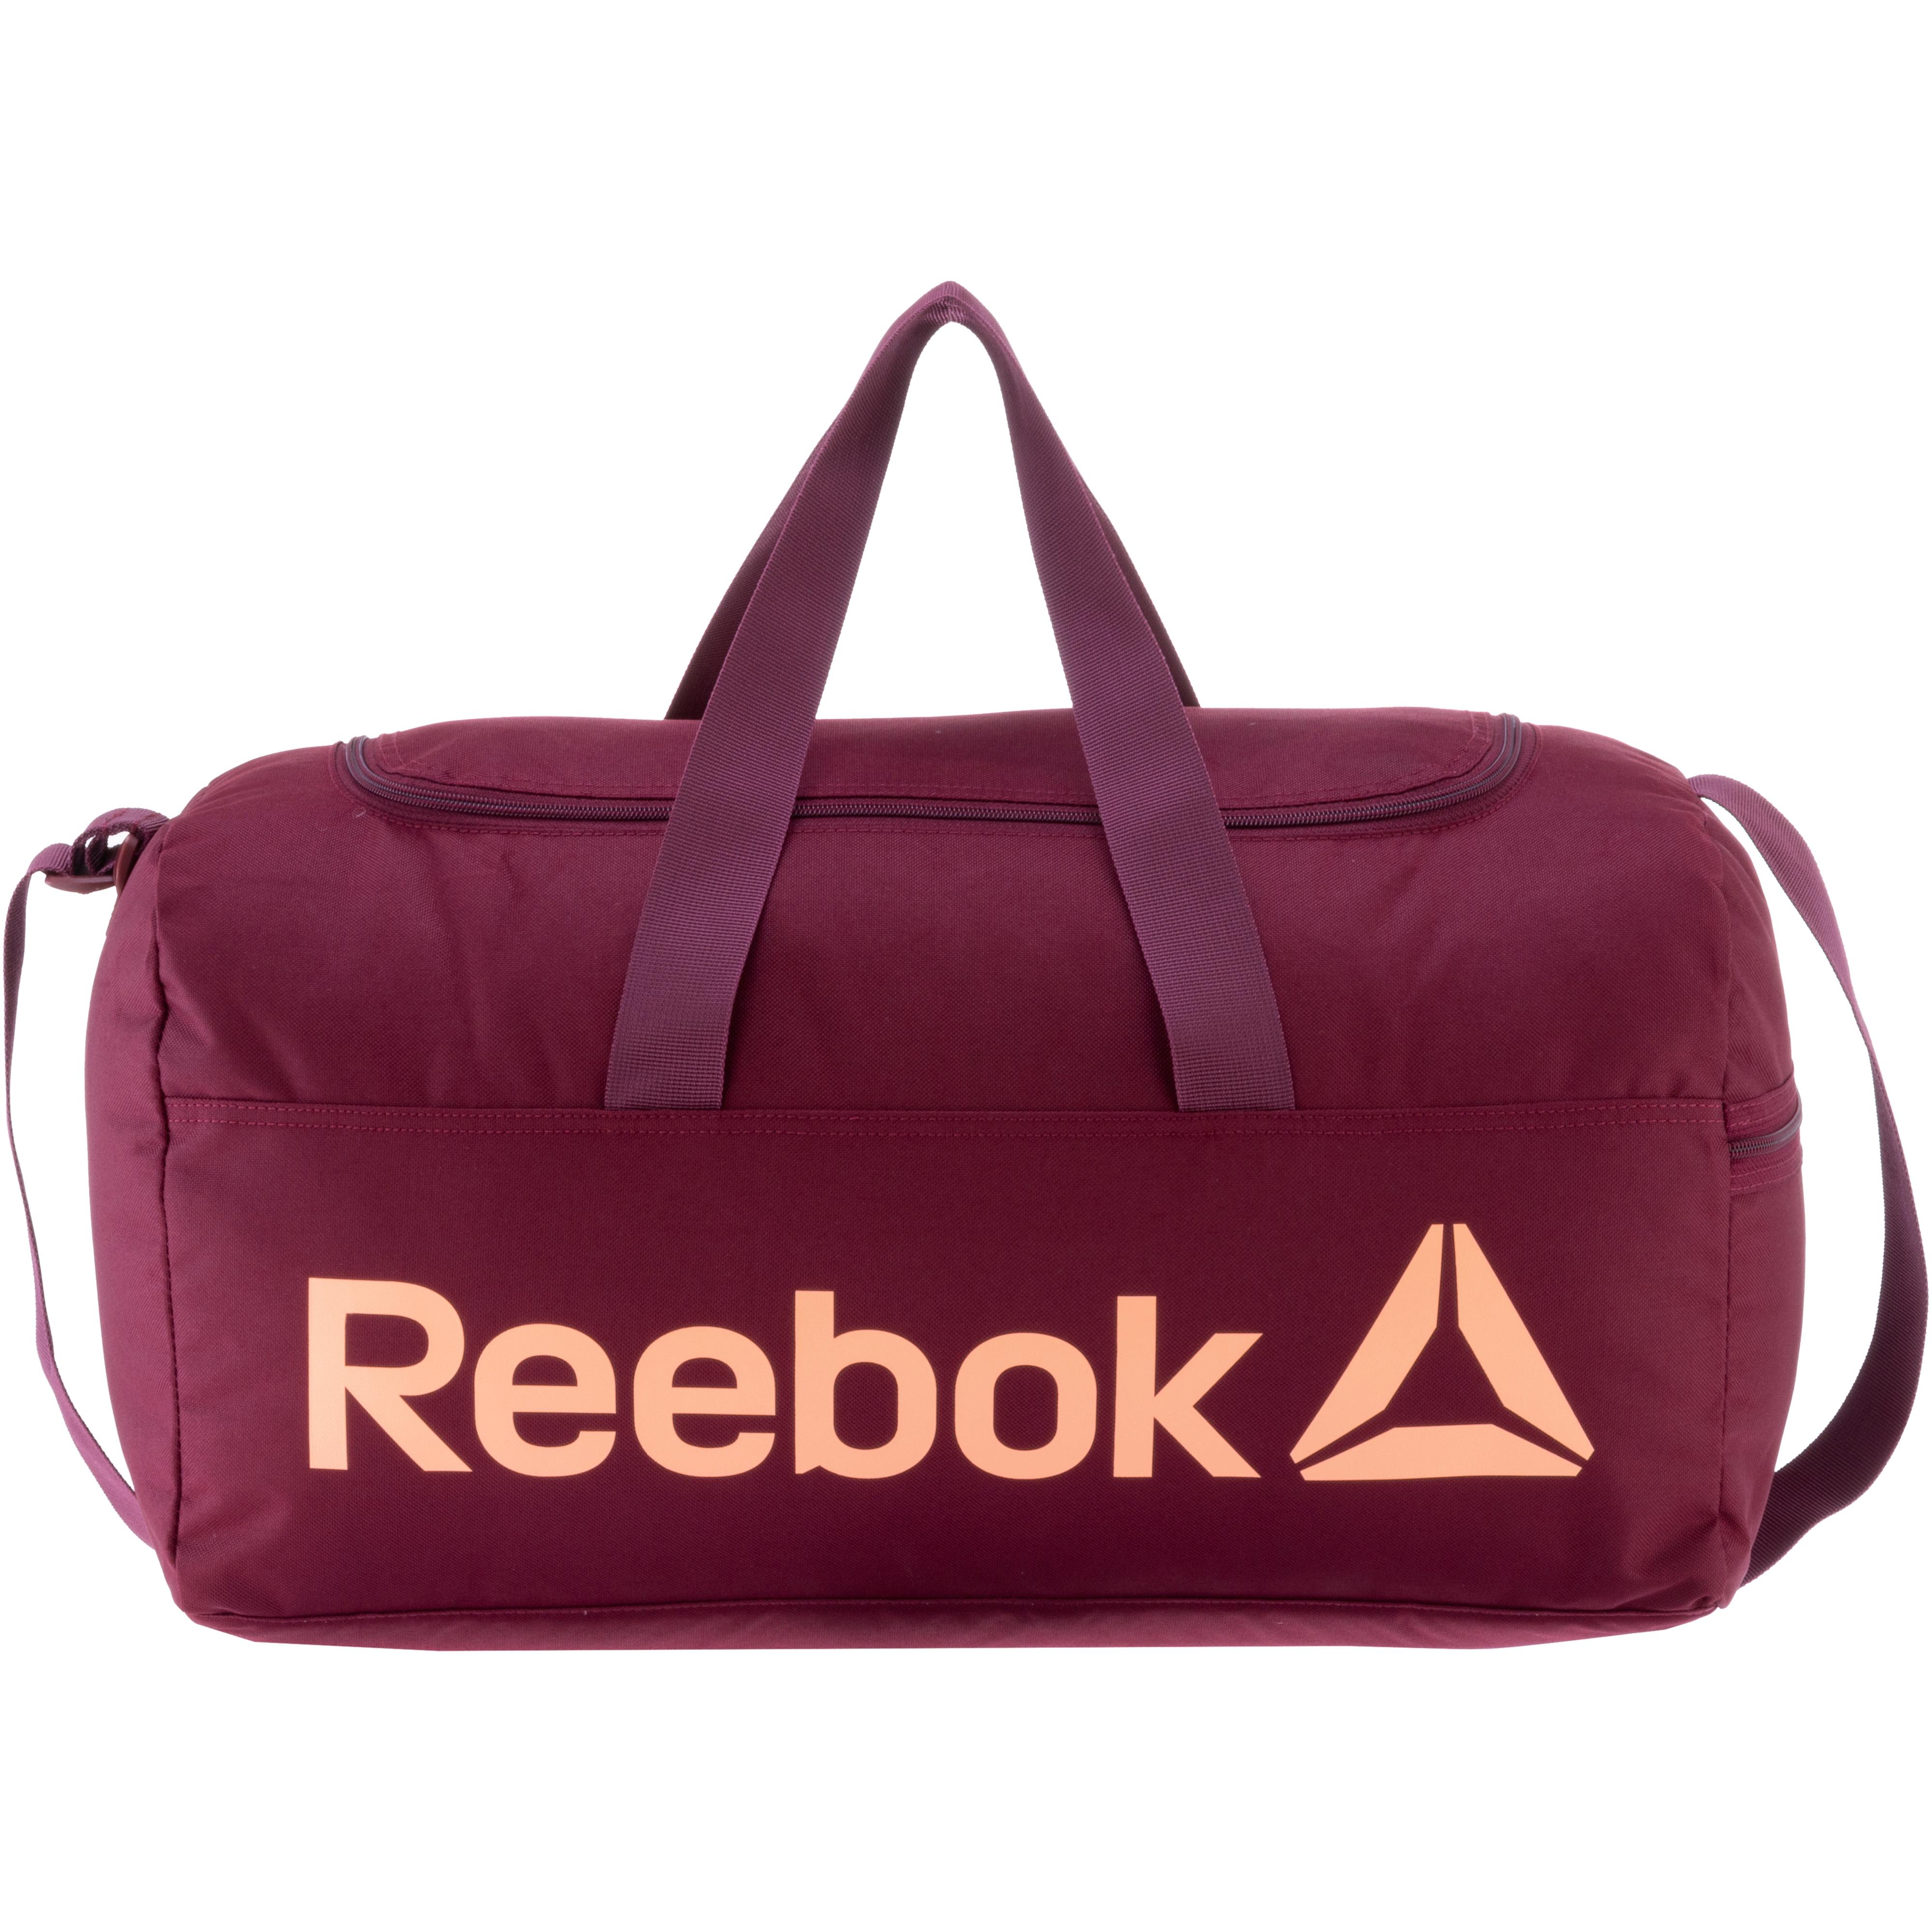 Reebok Sporttasche Damen luxmar im Online Shop von SportScheck kaufen